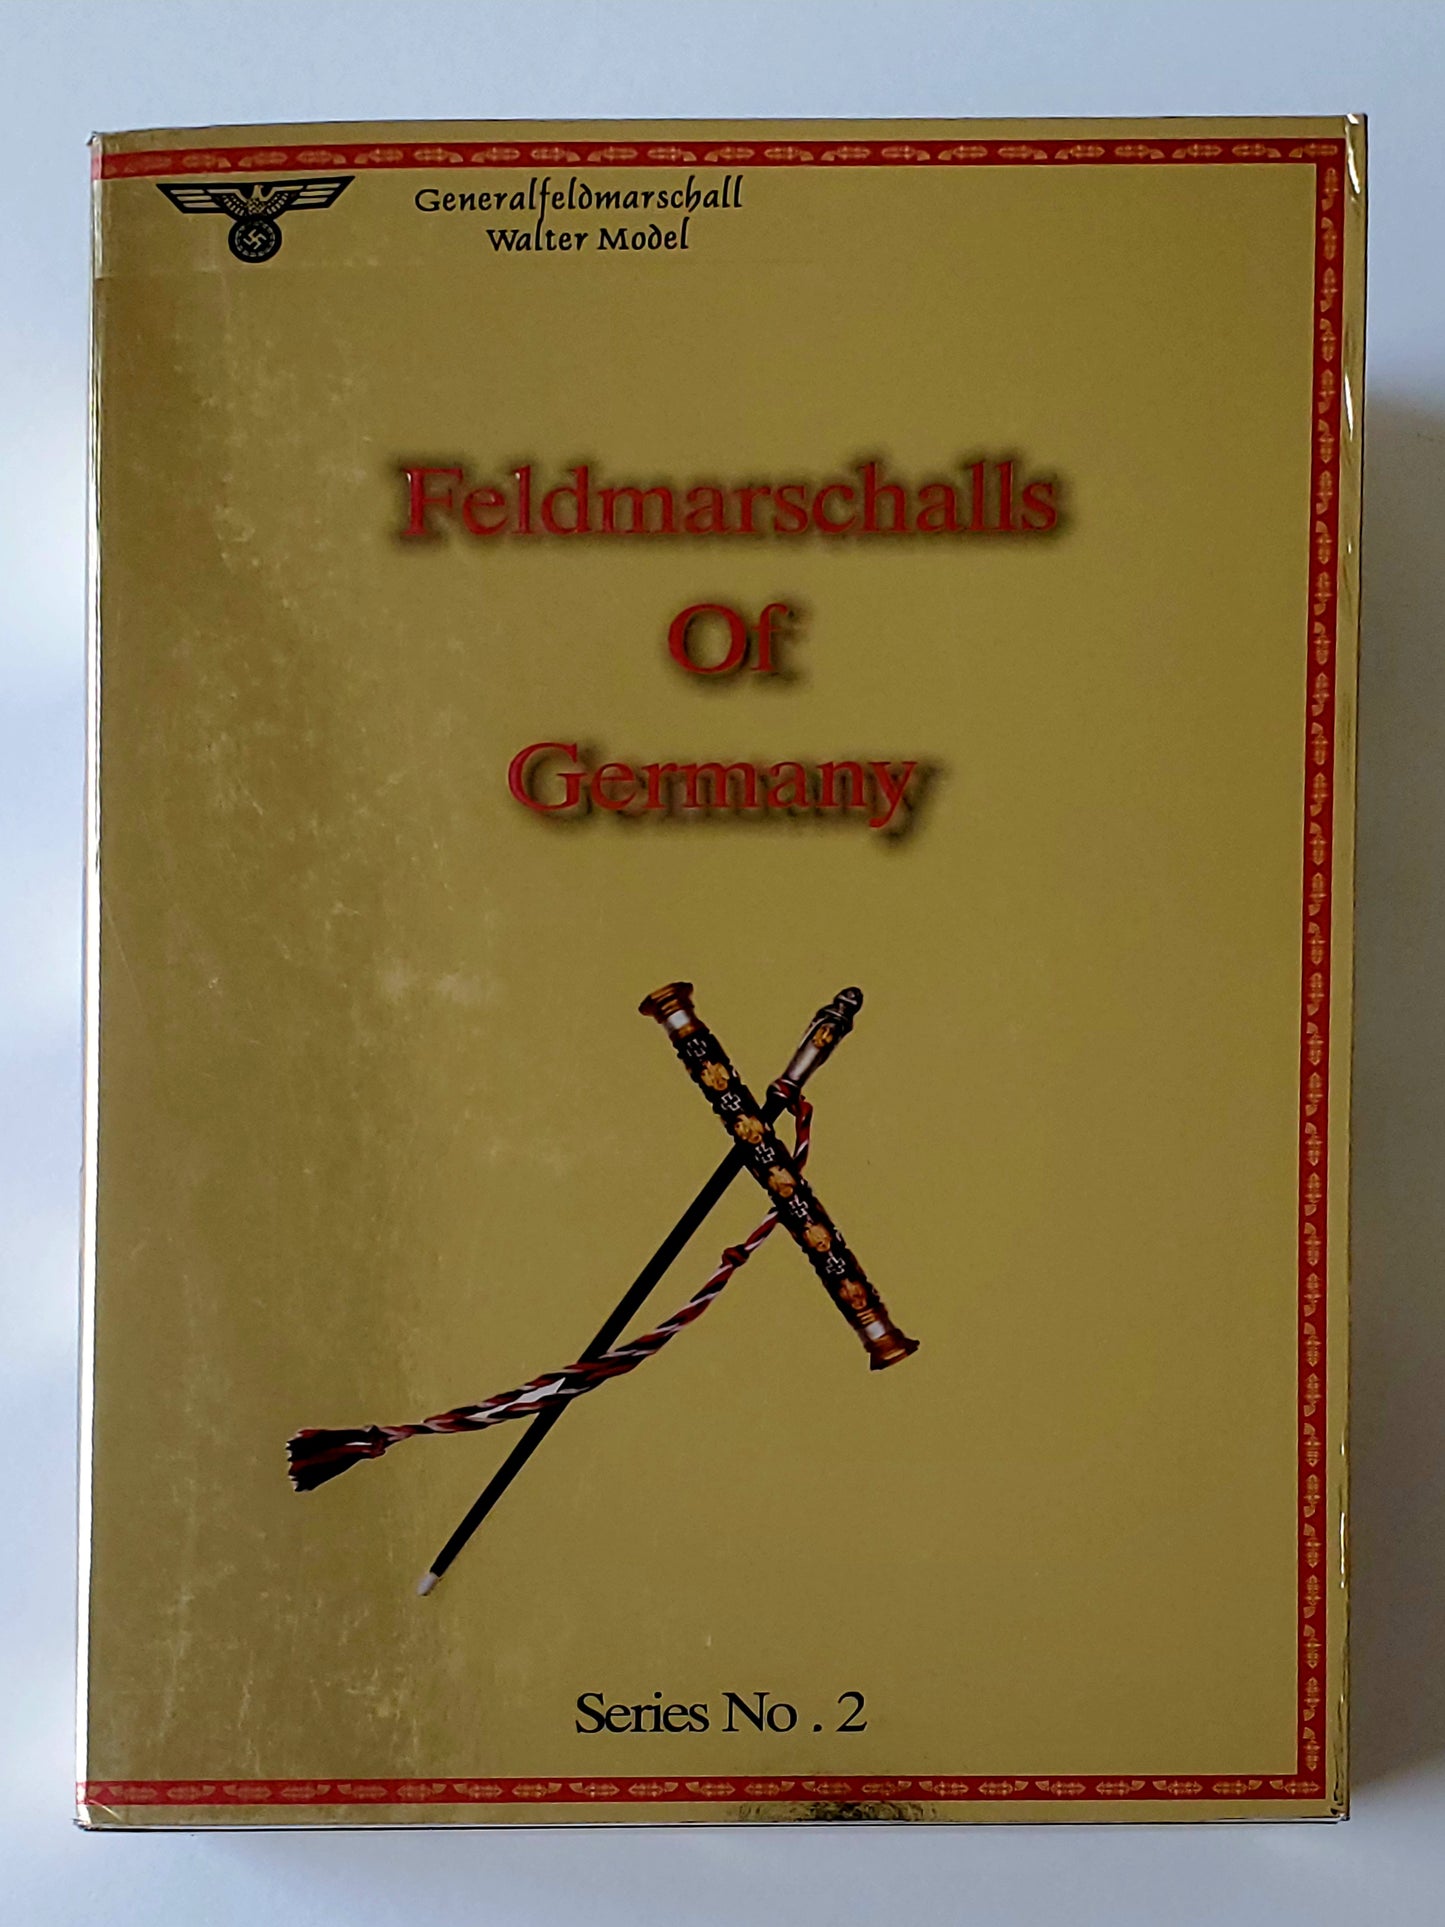 Feldmarschalls of Germany Series 2 Generalfeldmarschall Walter Model